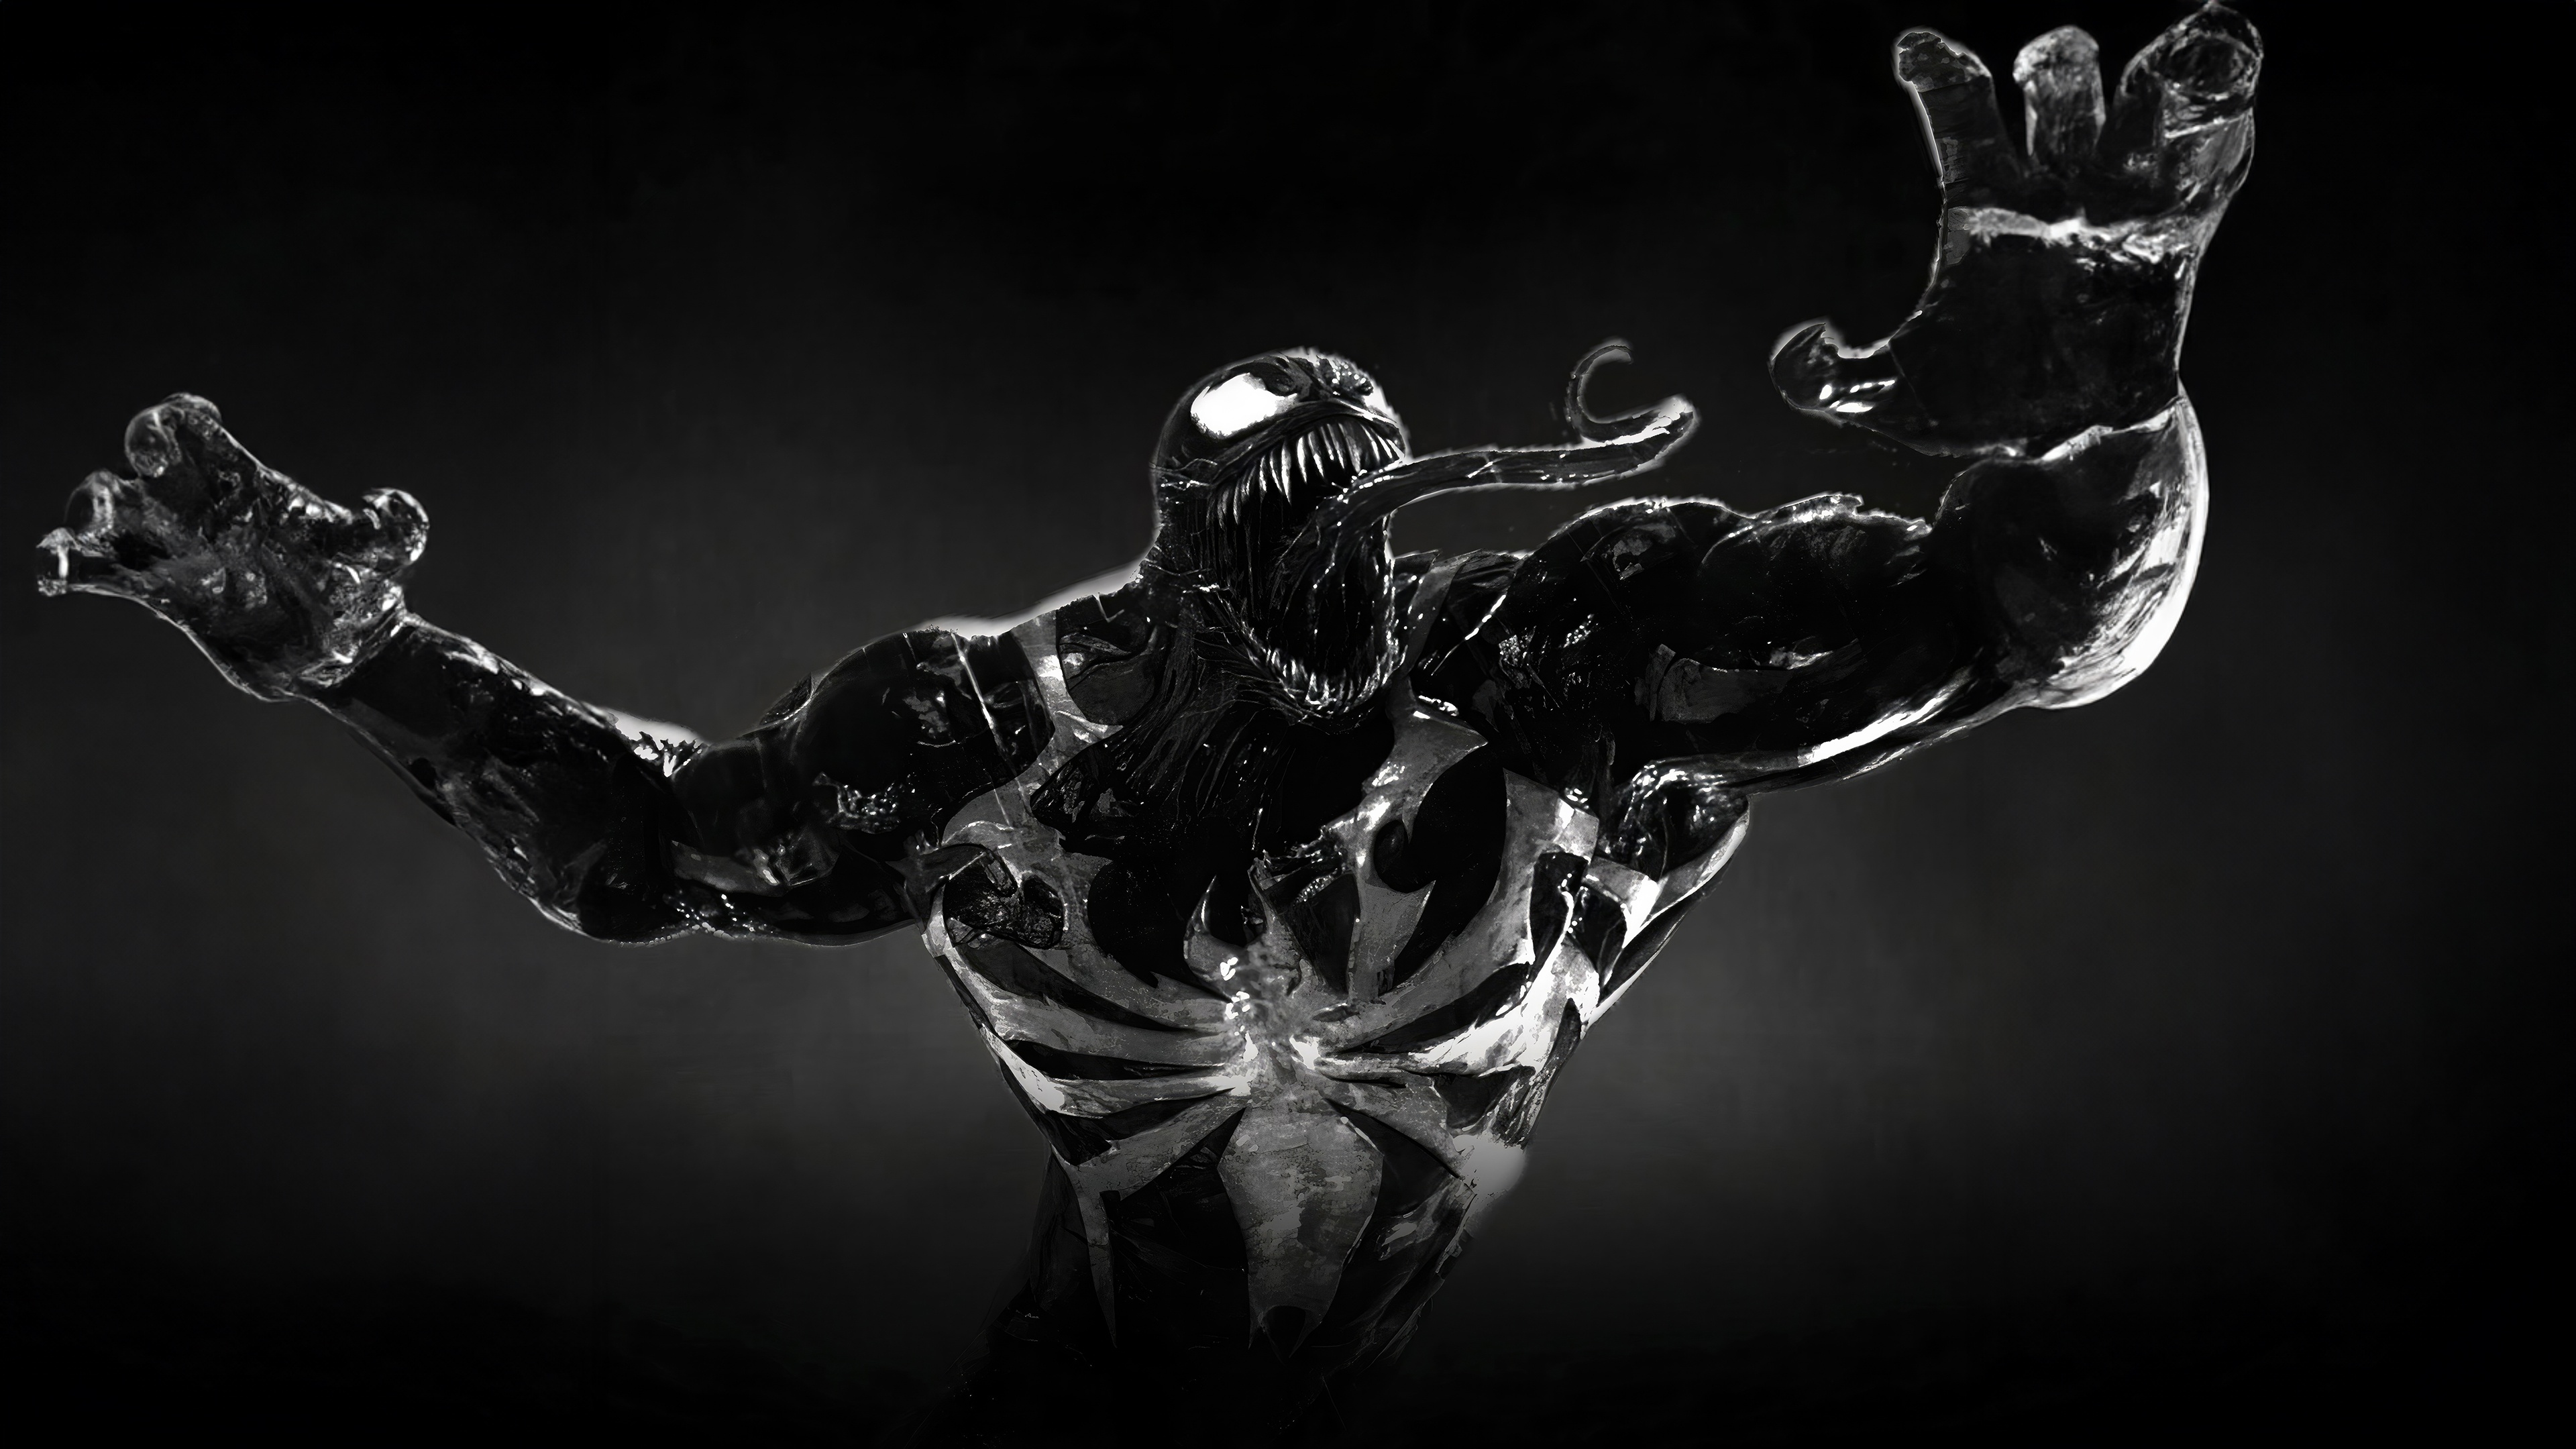 Fondos de pantalla Venom from Marvels Spider Man 2